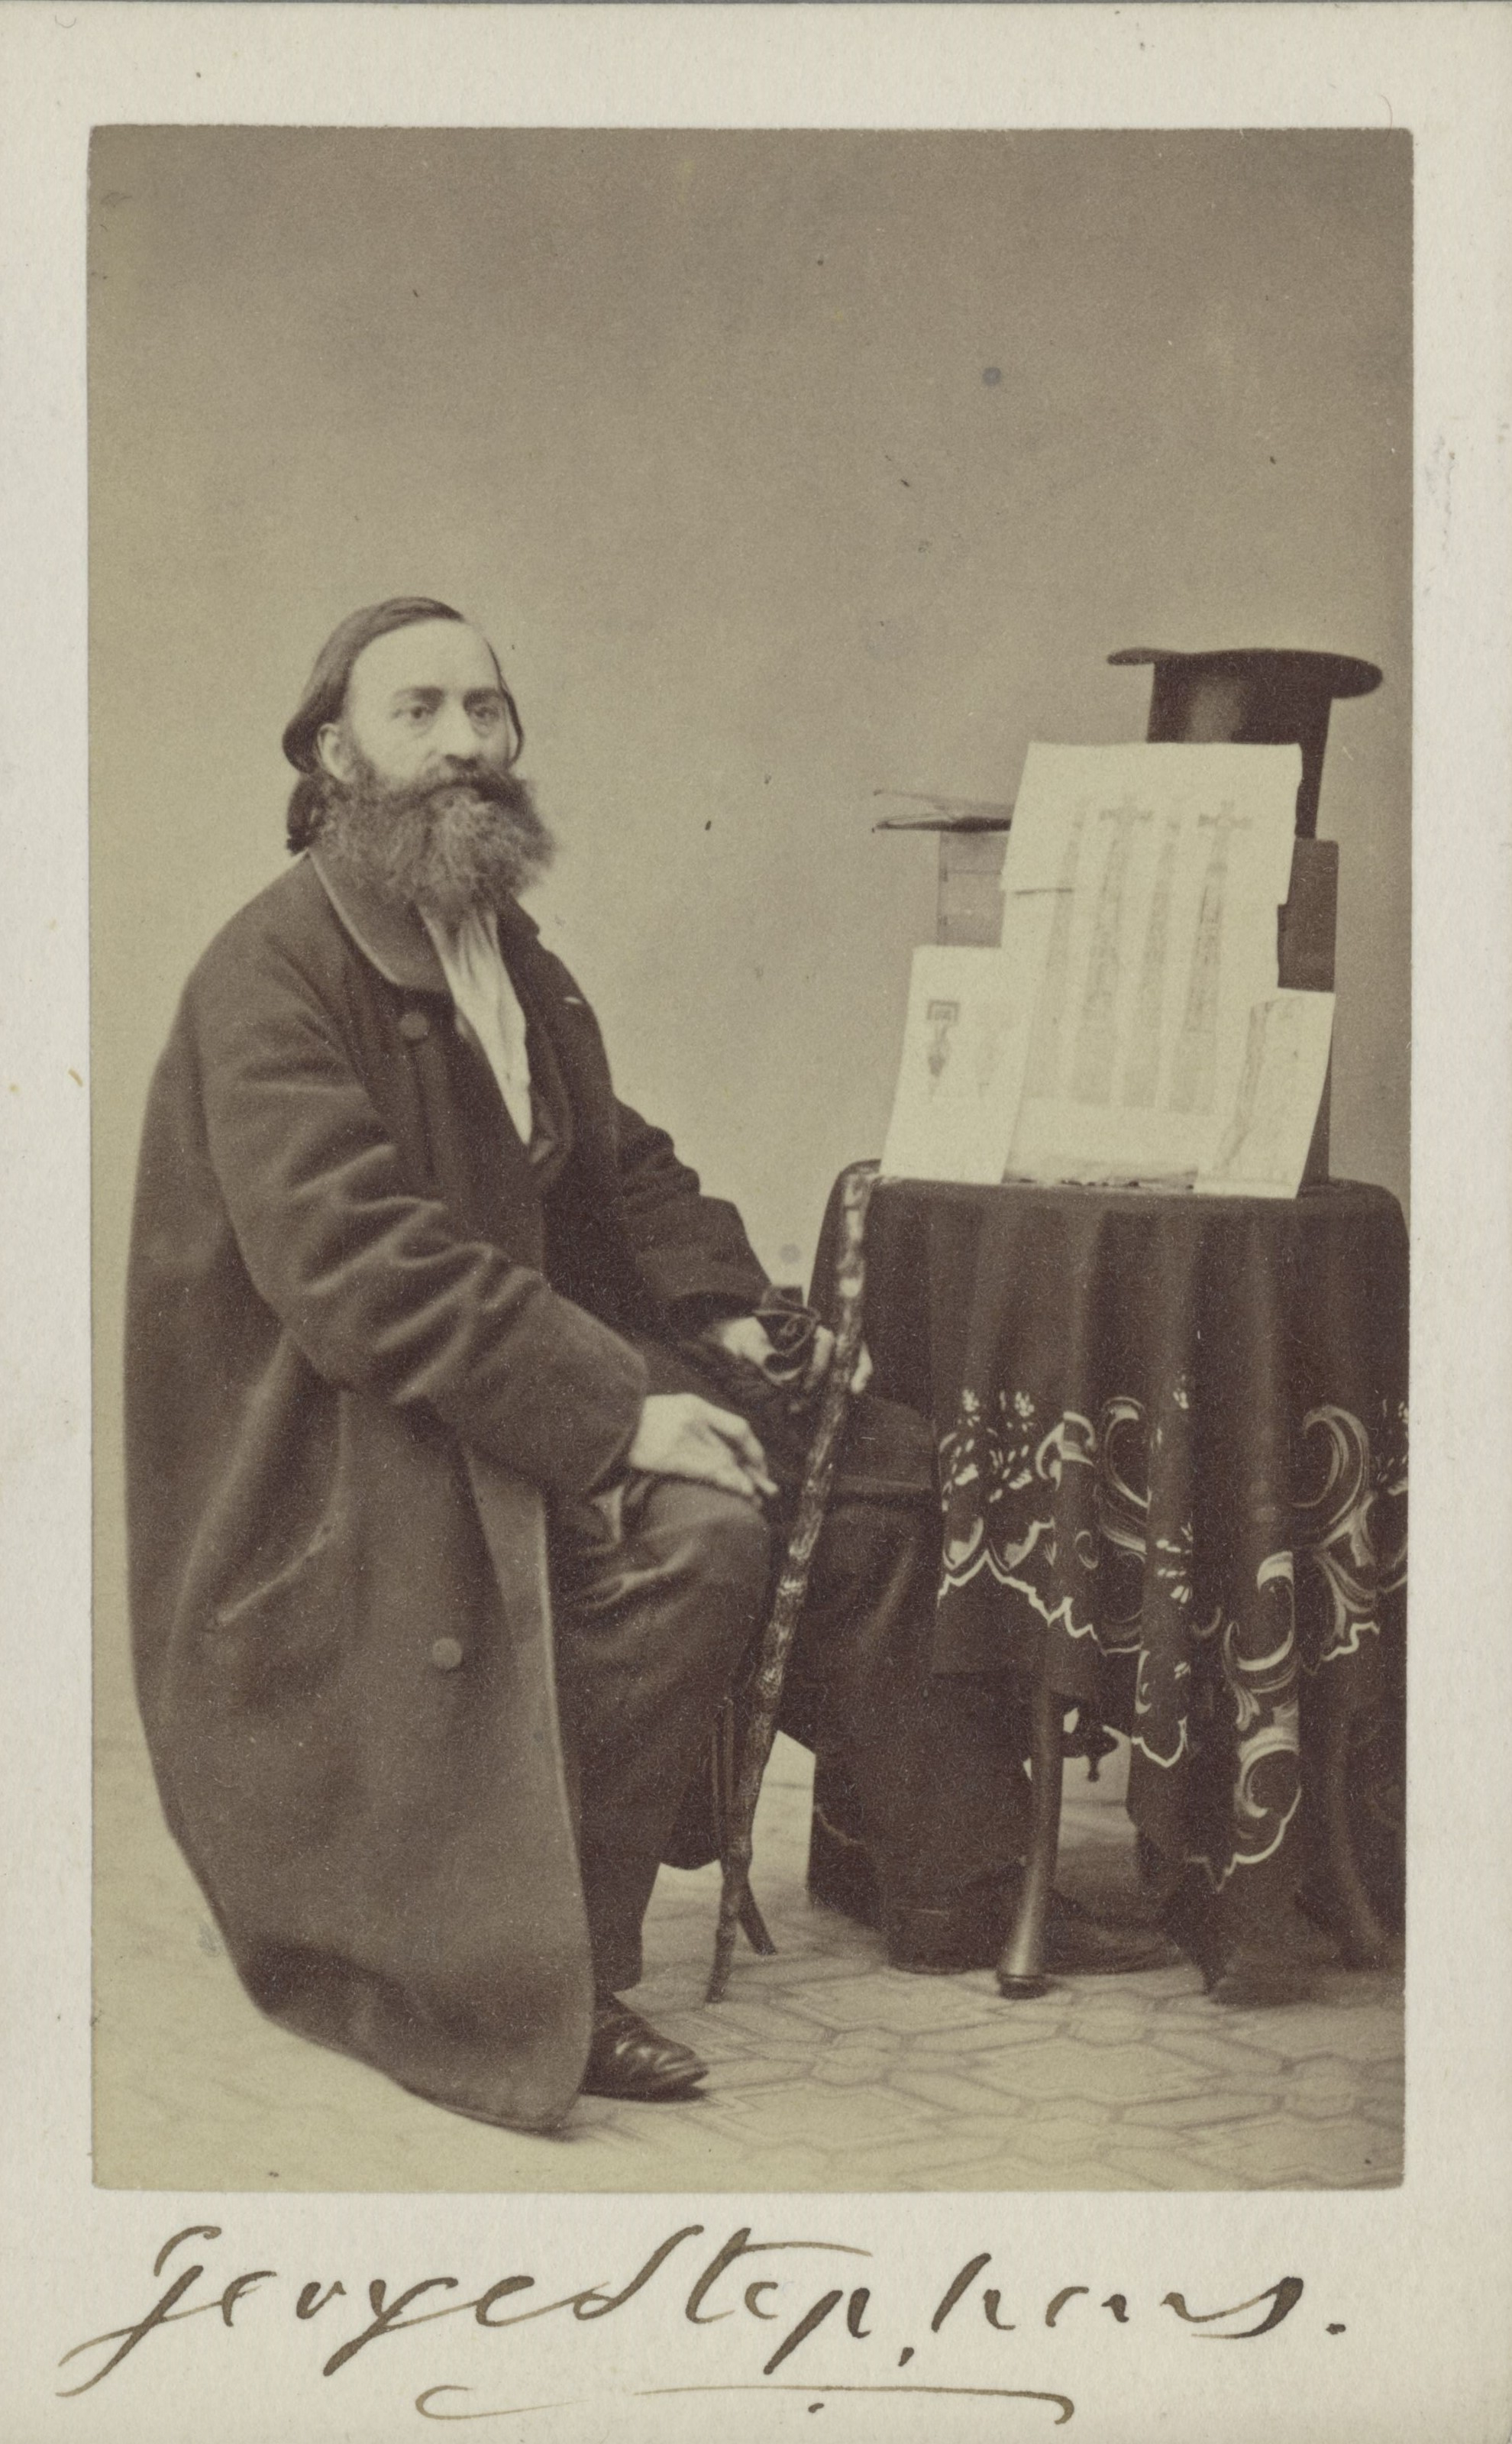 Fotografi av en långhårig man med långt skägg iförd en lång rock som sitter vid ett runt bord där flera teckningar är lutade mot en stapel som toppas av en upp och nervänd hatt. 